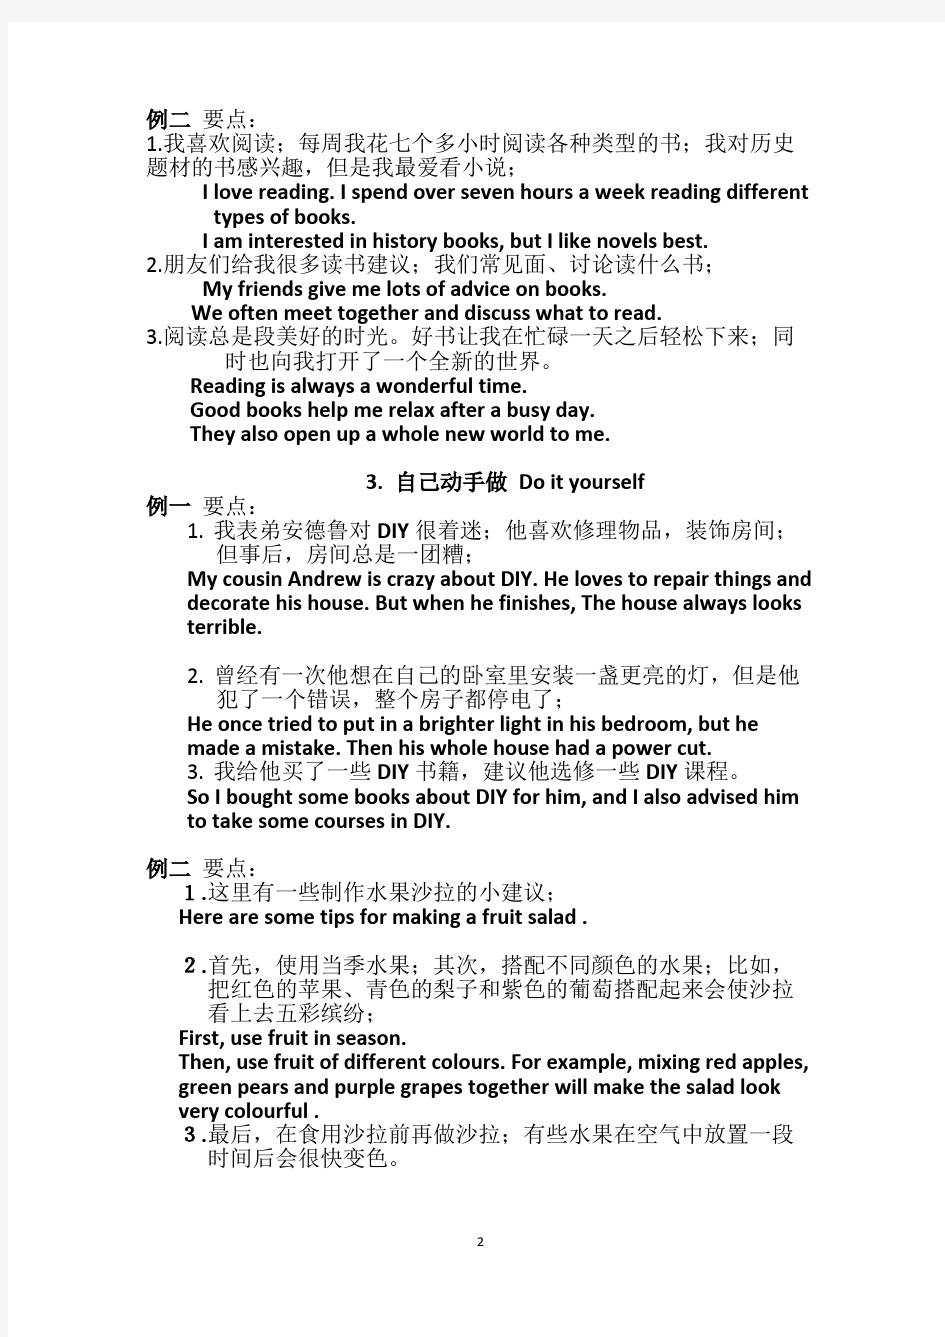 2016年江苏省初中英语听力口语自动化考试纲要·话题简述(中英文对照)(2)解读